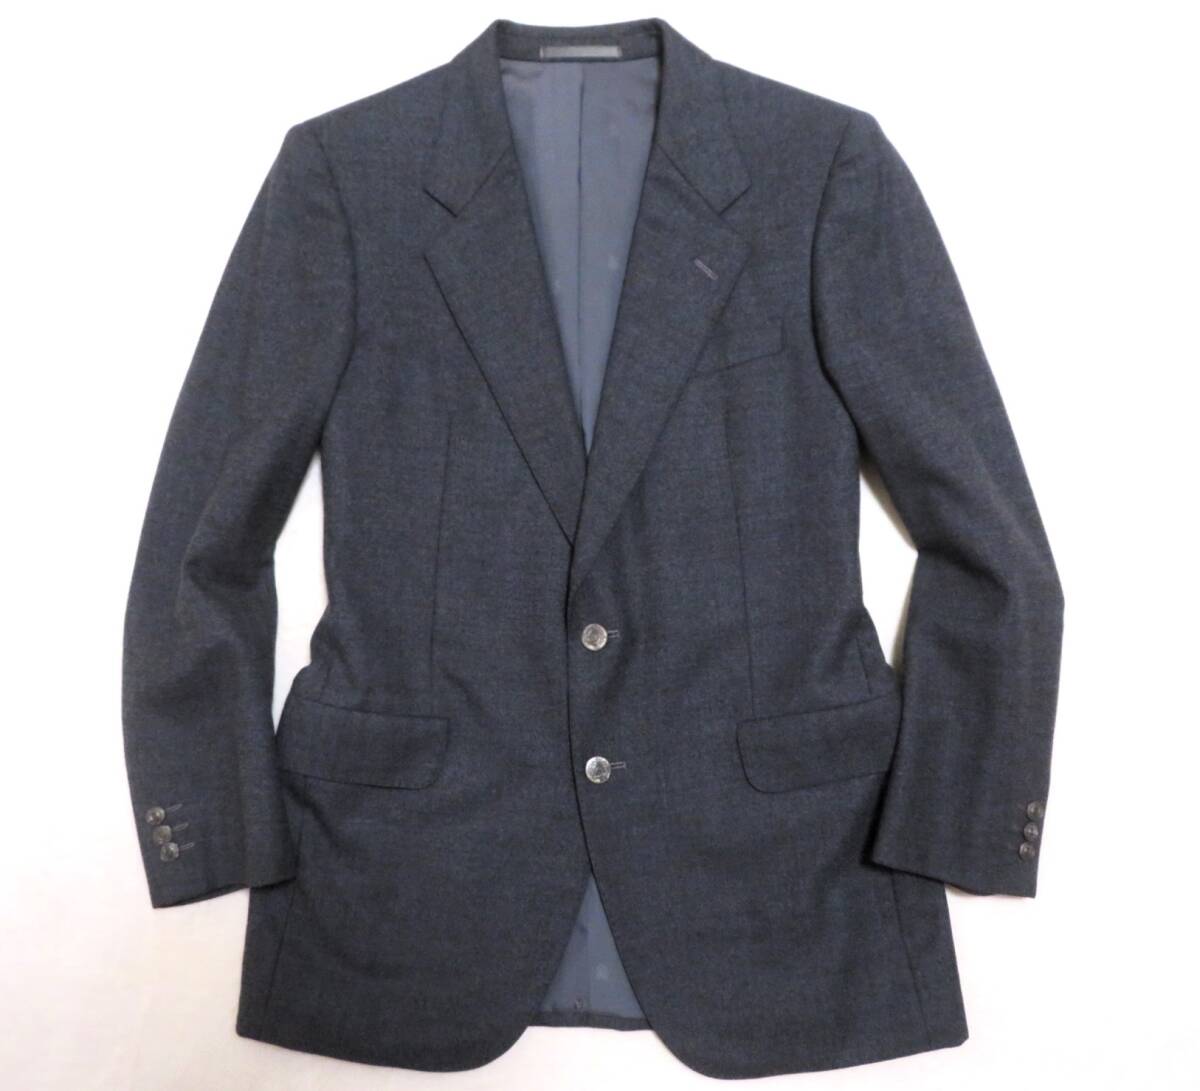  прекрасный товар Aquascutum Aquascutum tailored jacket серебряный кнопка мужской блейзер общий подкладка 2. бизнес Golf джентльмен 94A5 осень-зима предмет 